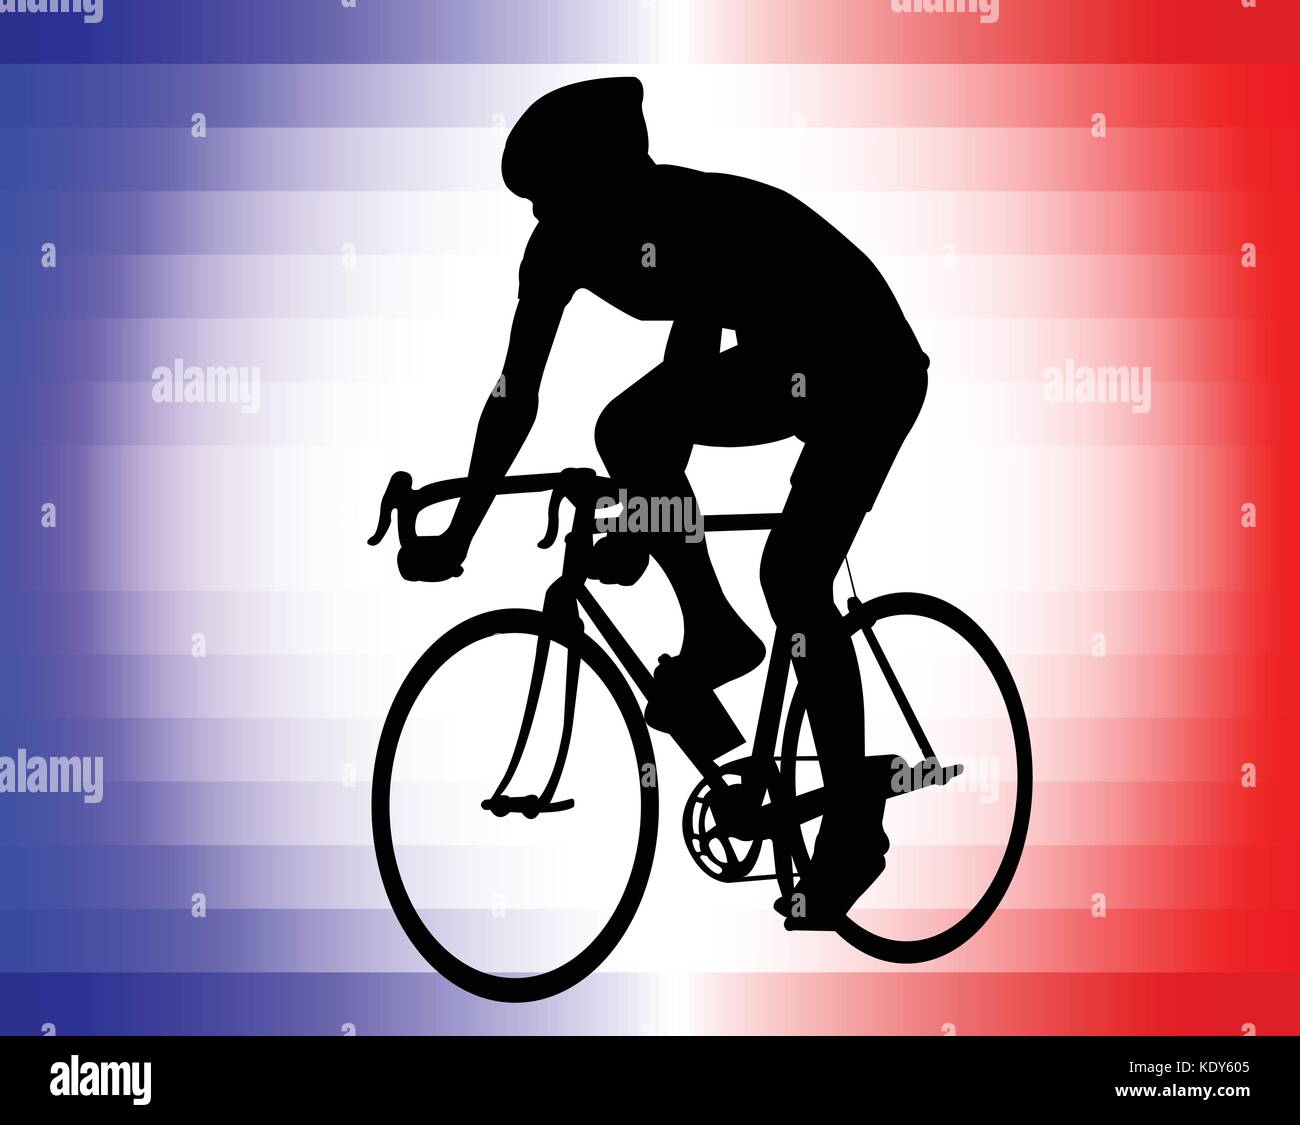 Radfahrer Silhouette auf der Tricolor Hintergrund-Vektor Stock Vektor